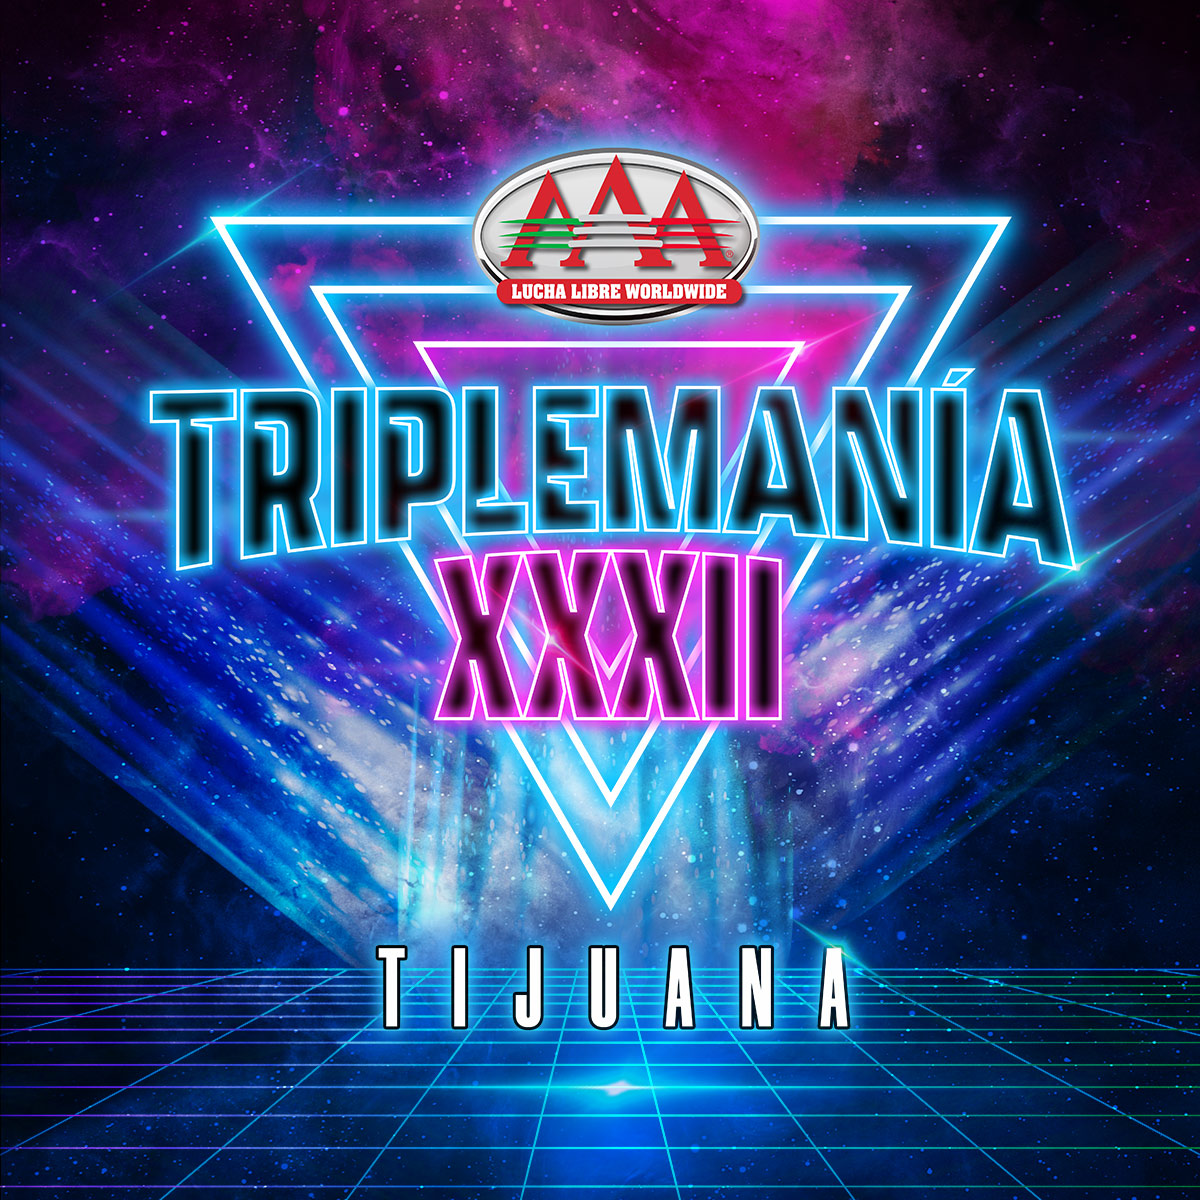 Anota en tu calendario la fecha para el siguiente capítulo de #TriplemaniaXXXII que llegará a Tijuana. 🤩 🗓️ 15 de Junio. | ⌚ 6:00 PM. 🎟️ Boletos a la venta en @boletomovil.